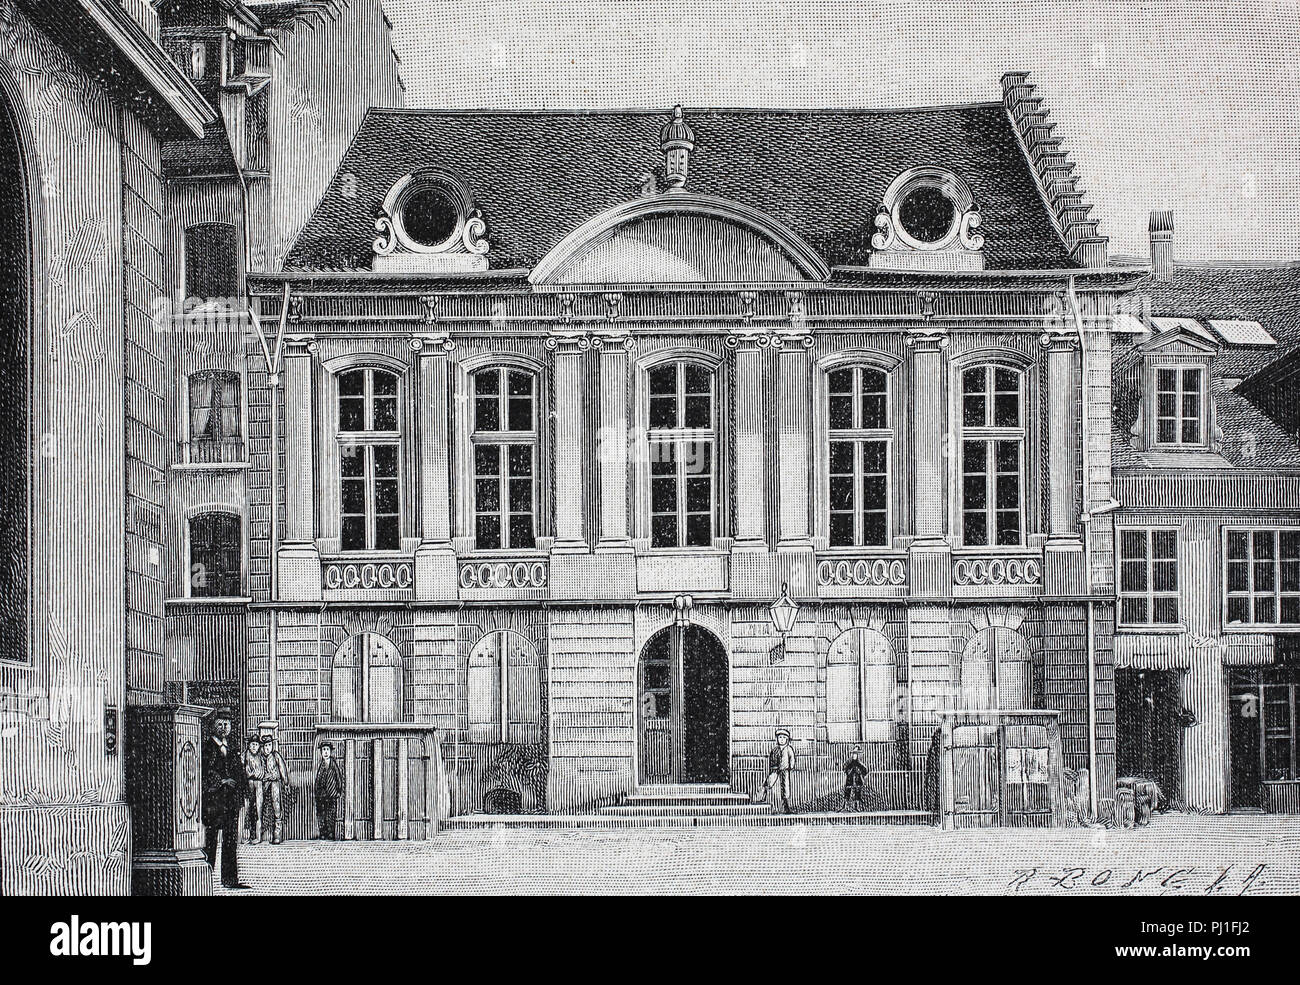 Edificio della fondazione dell'Unione postale universale, istituito dal Trattato di Berna del 1874, Svizzera, digitale Riproduzione migliorata di un woodprint dall'anno 1890 Foto Stock